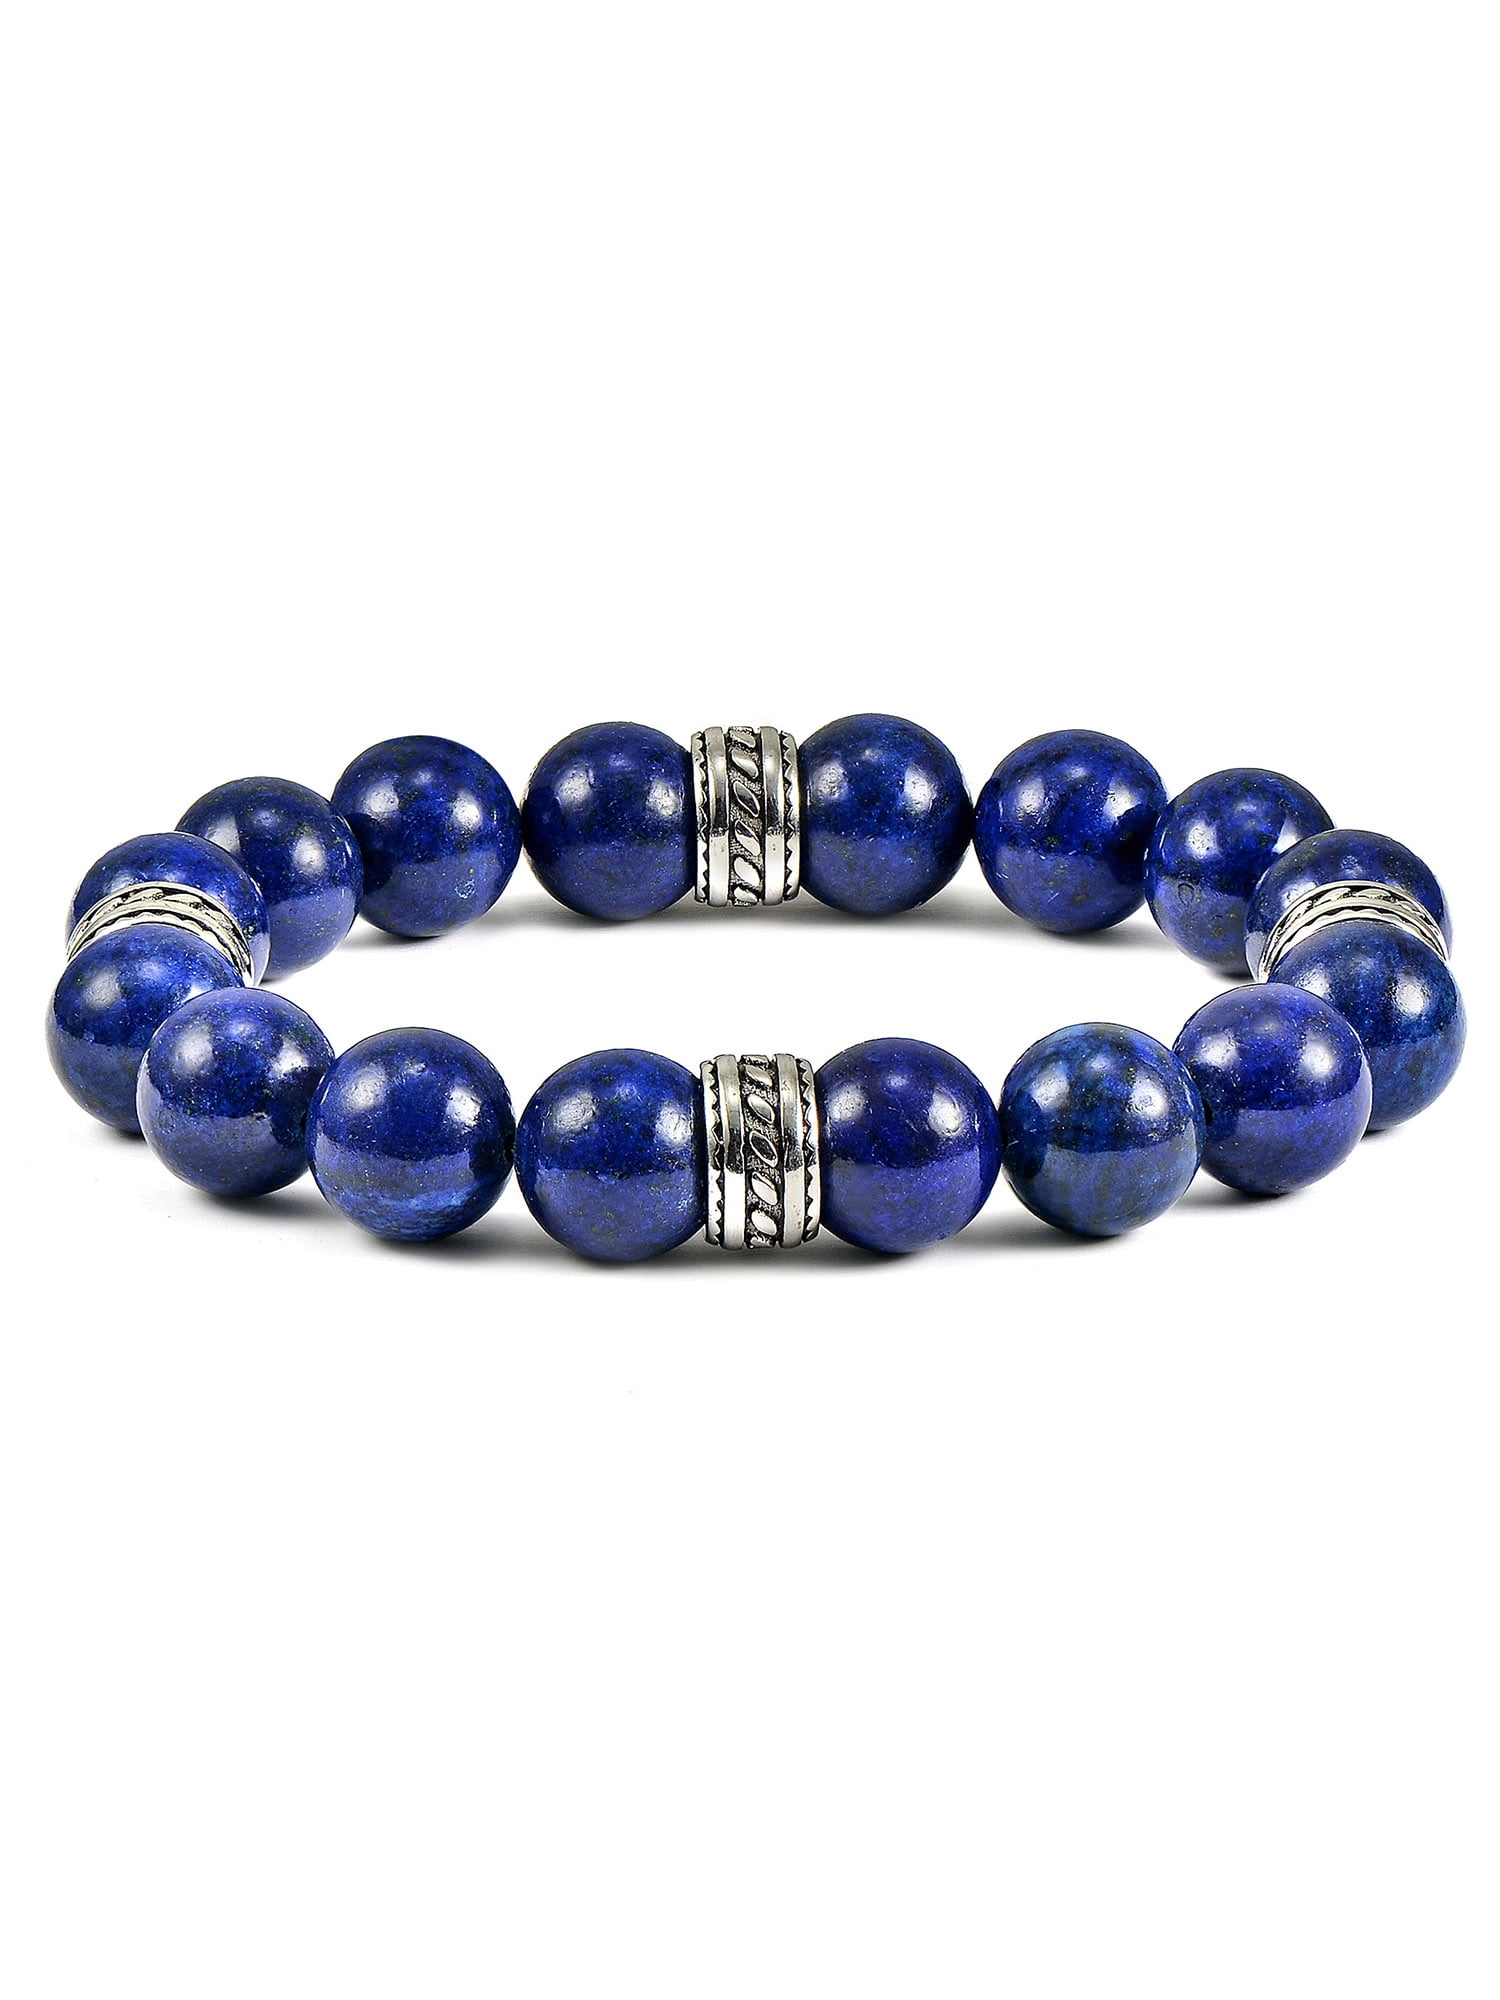 Men's David Yurman Spiritual Beads Hex Bracelet With Lapis | REEDS Jewelers